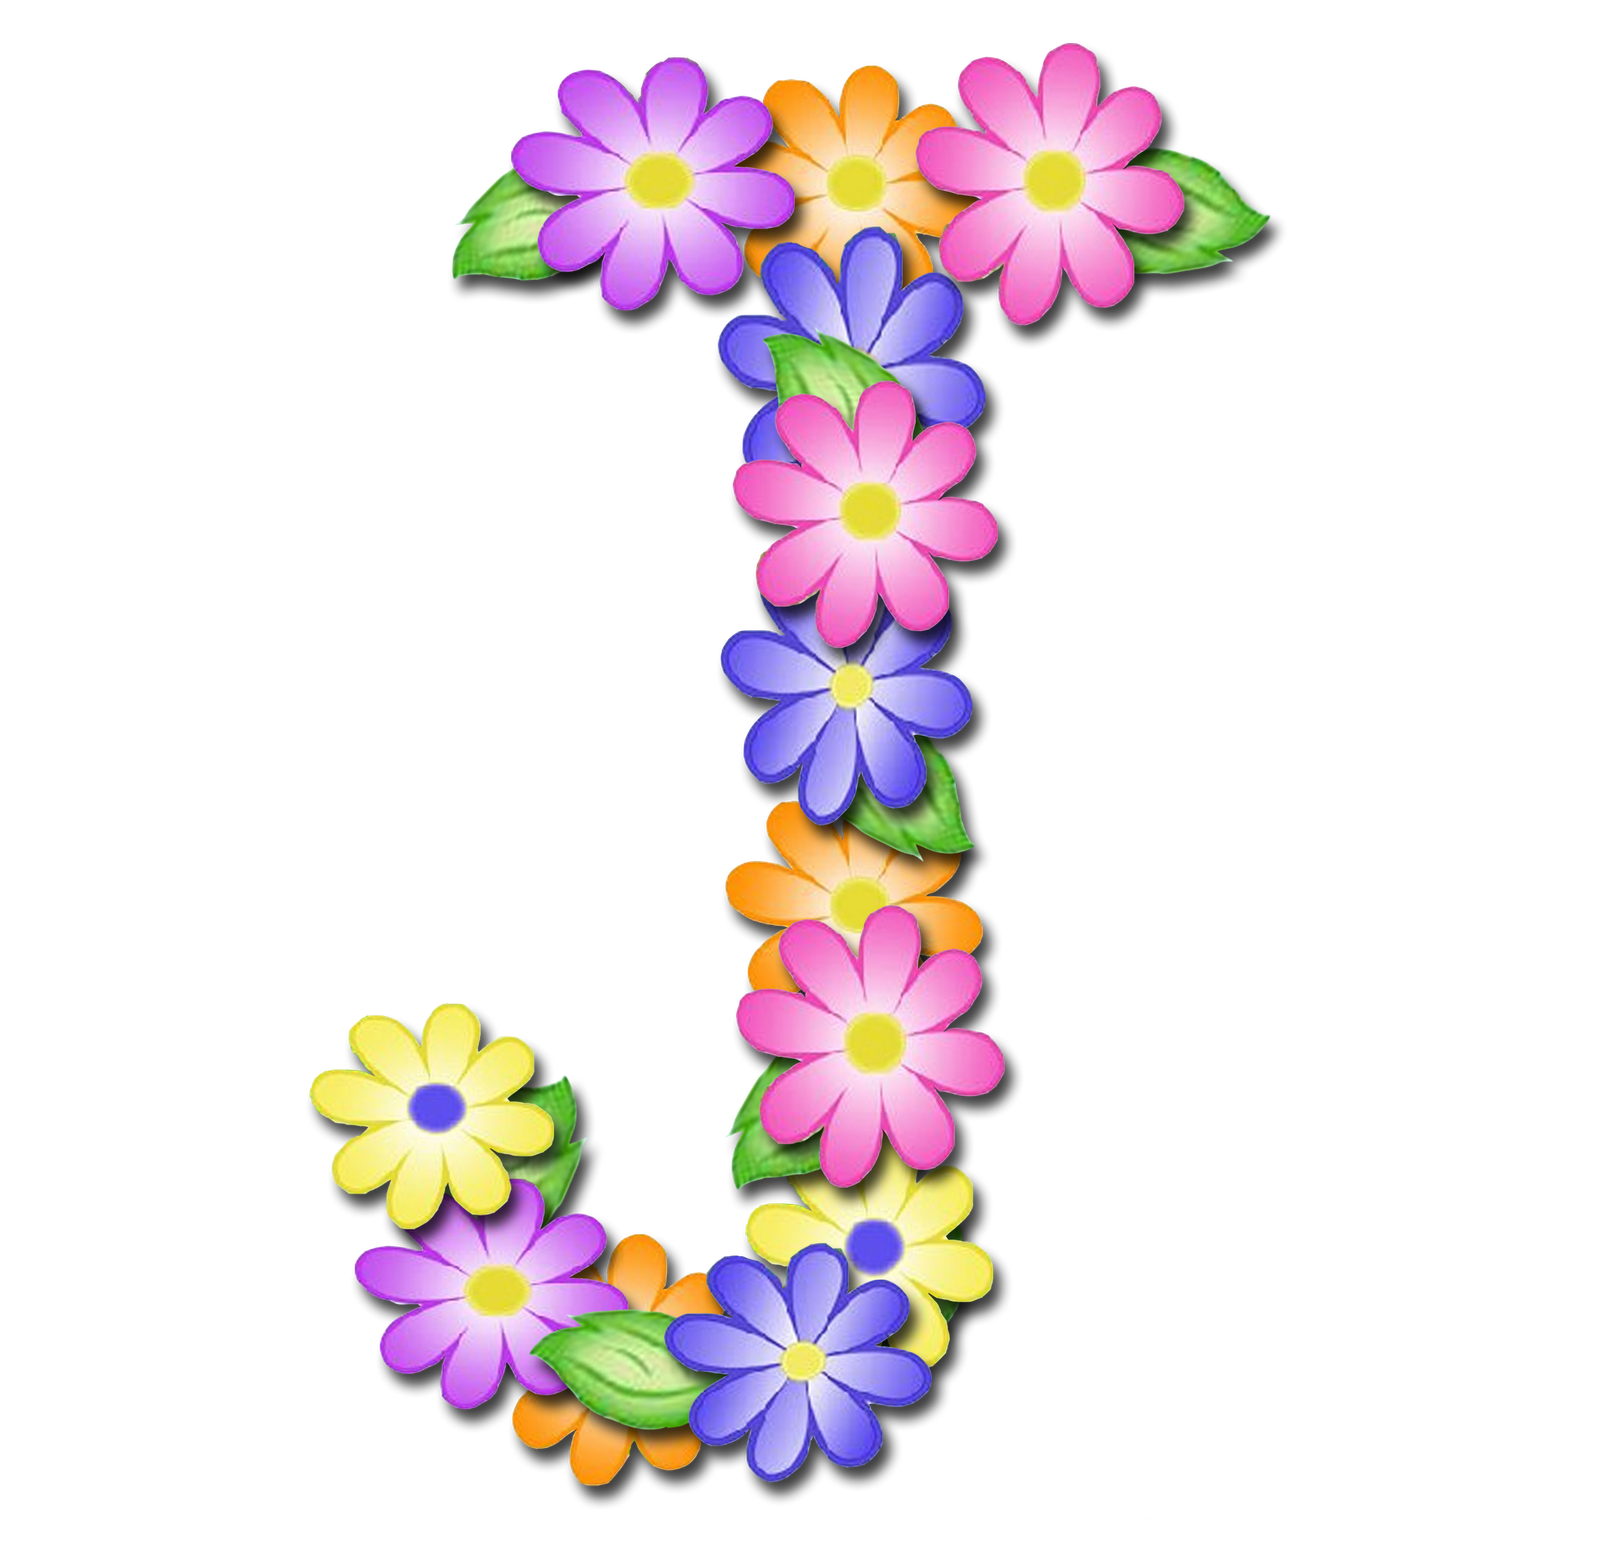 صور الحروف الإنجليزية بأجمل الزهور والورود بخلفية شفافة بنج png وجودة عالية للمصممين :: إبحث عن حروف إسمك بالإنجليزية P_1699v3whd1